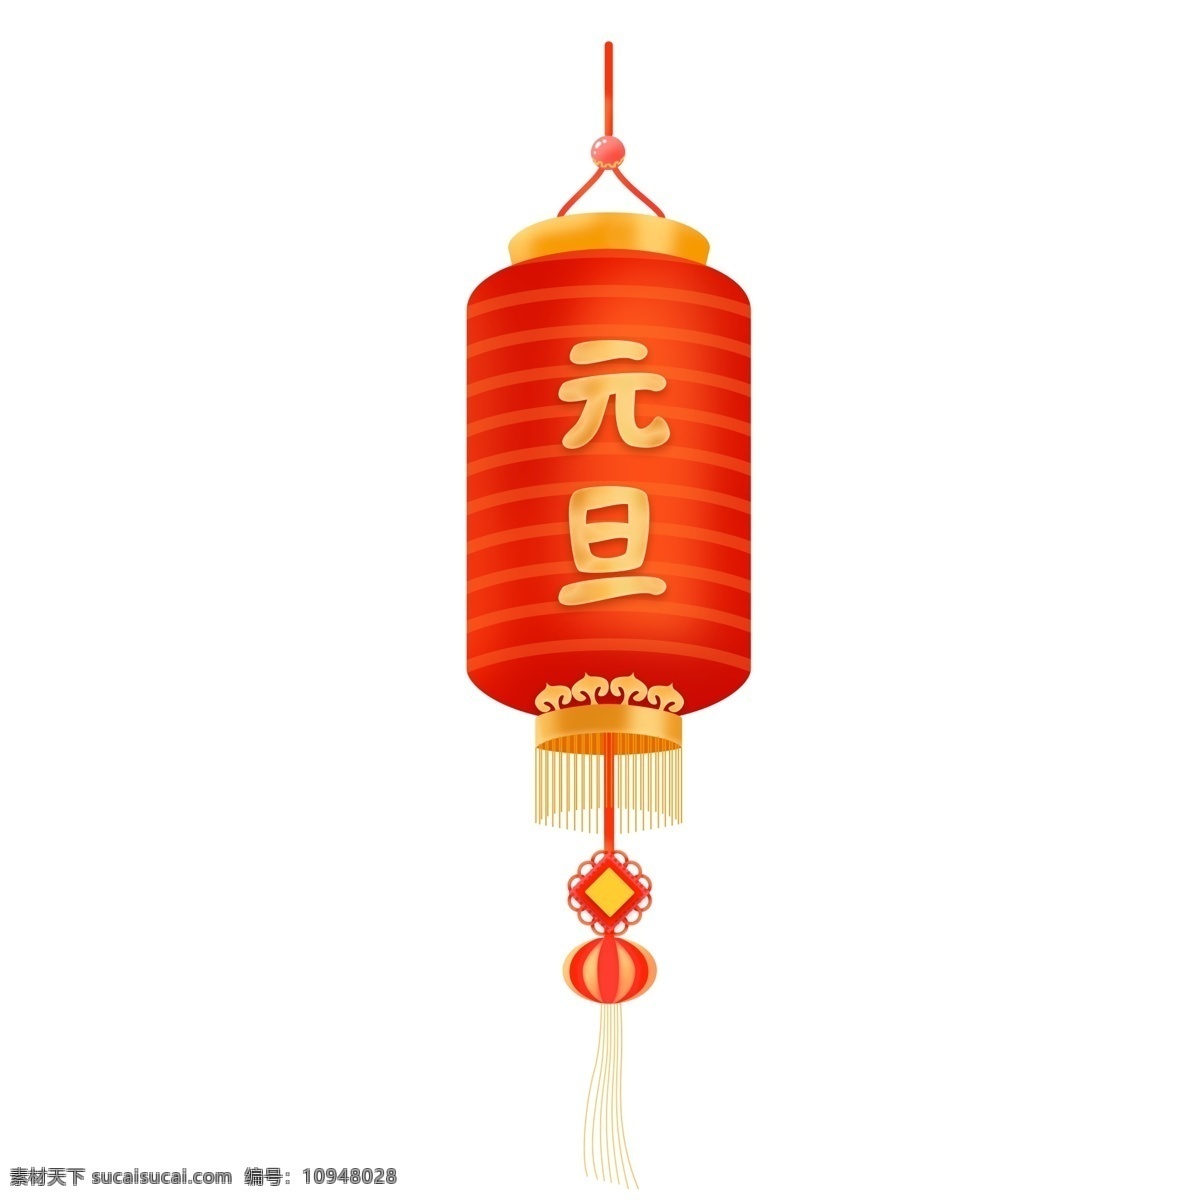 微 立体 手绘 喜庆 元旦 节日 灯笼 元素 中国风 微立体 金红 花灯 中国结 挂穗 庆祝